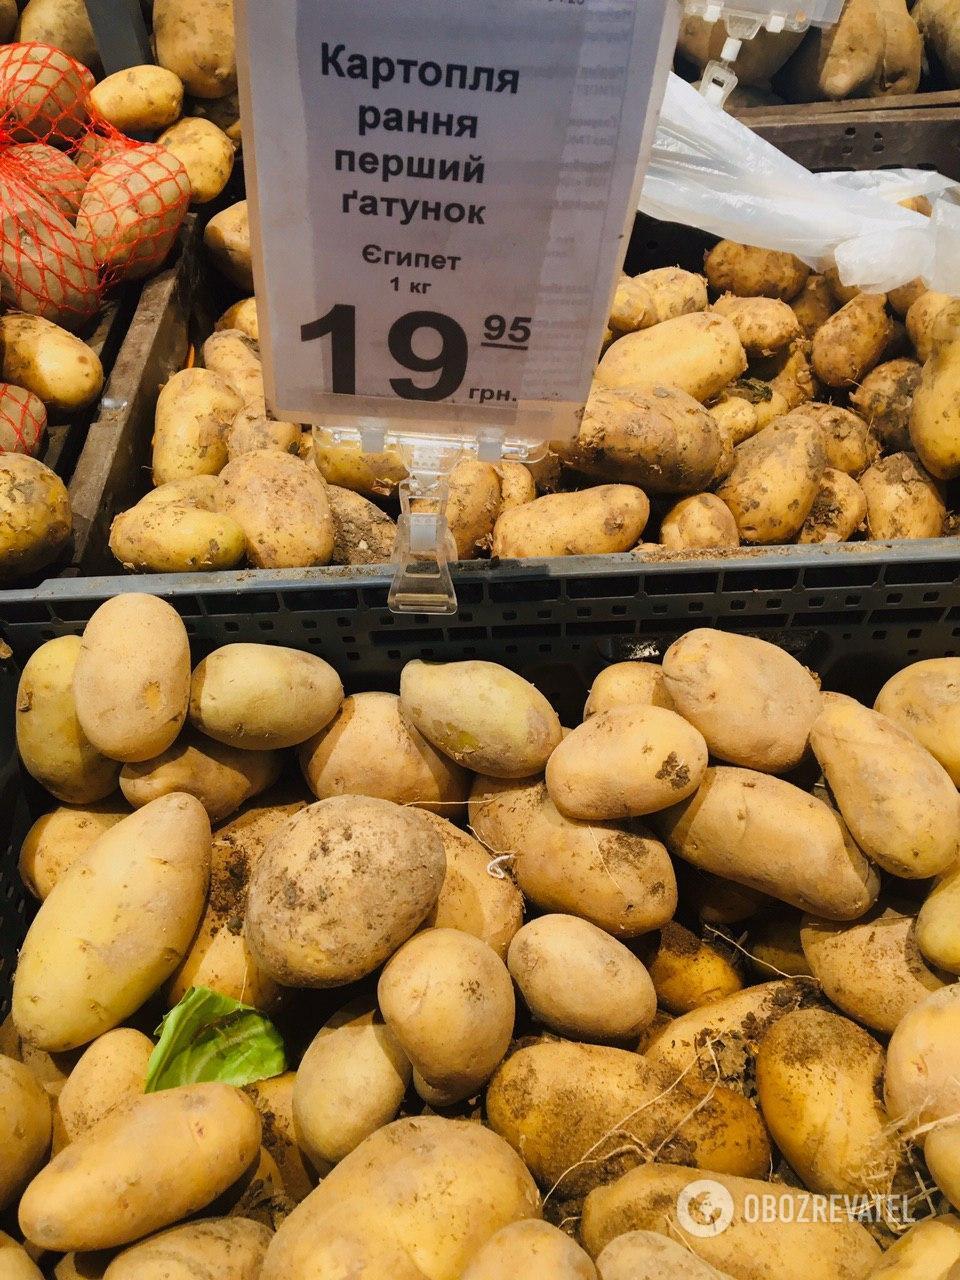 Овощи, которые привезли из-за границы, дешевле в днепровских супермаркетах